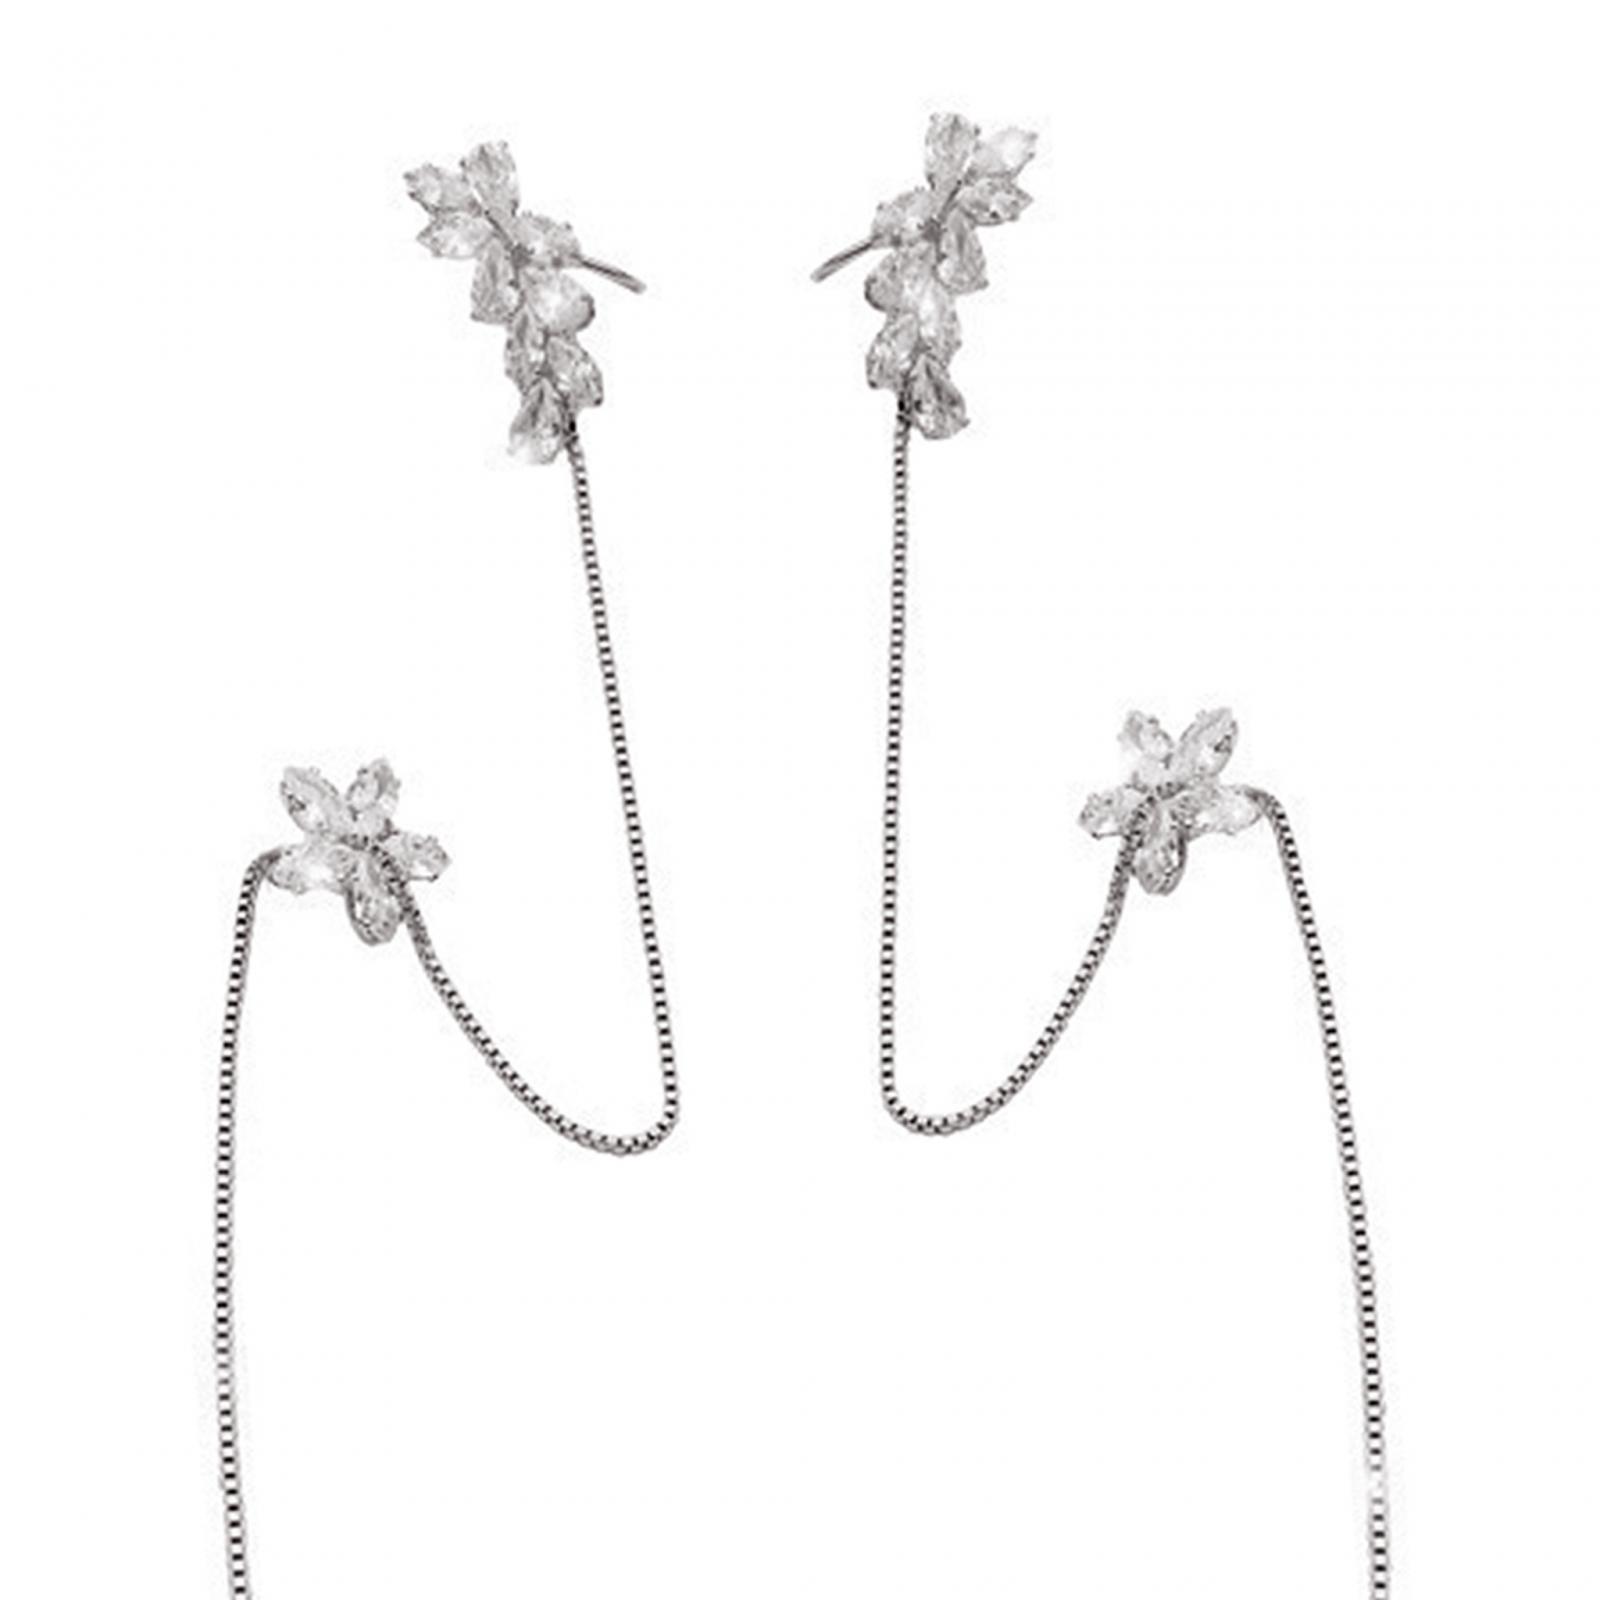 Threader Earrings Gorgeous Long Chain Earrings for Women Girl Party Birthday